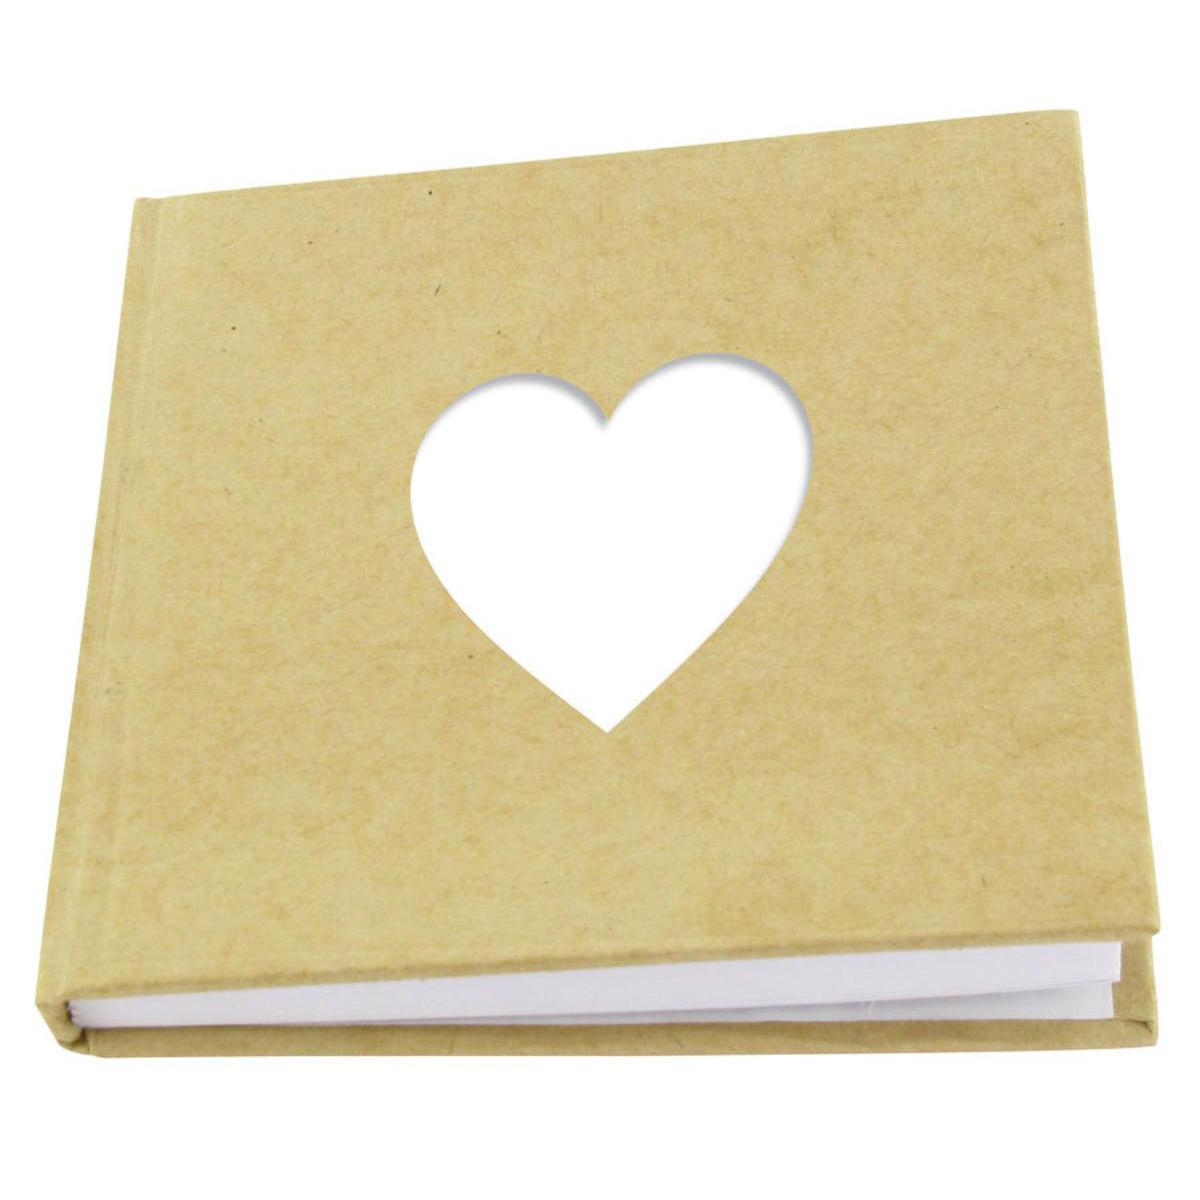 Carnet avec couverture rigide découpe cœur - Carton - 10,5 x 10,5 cm - Beige